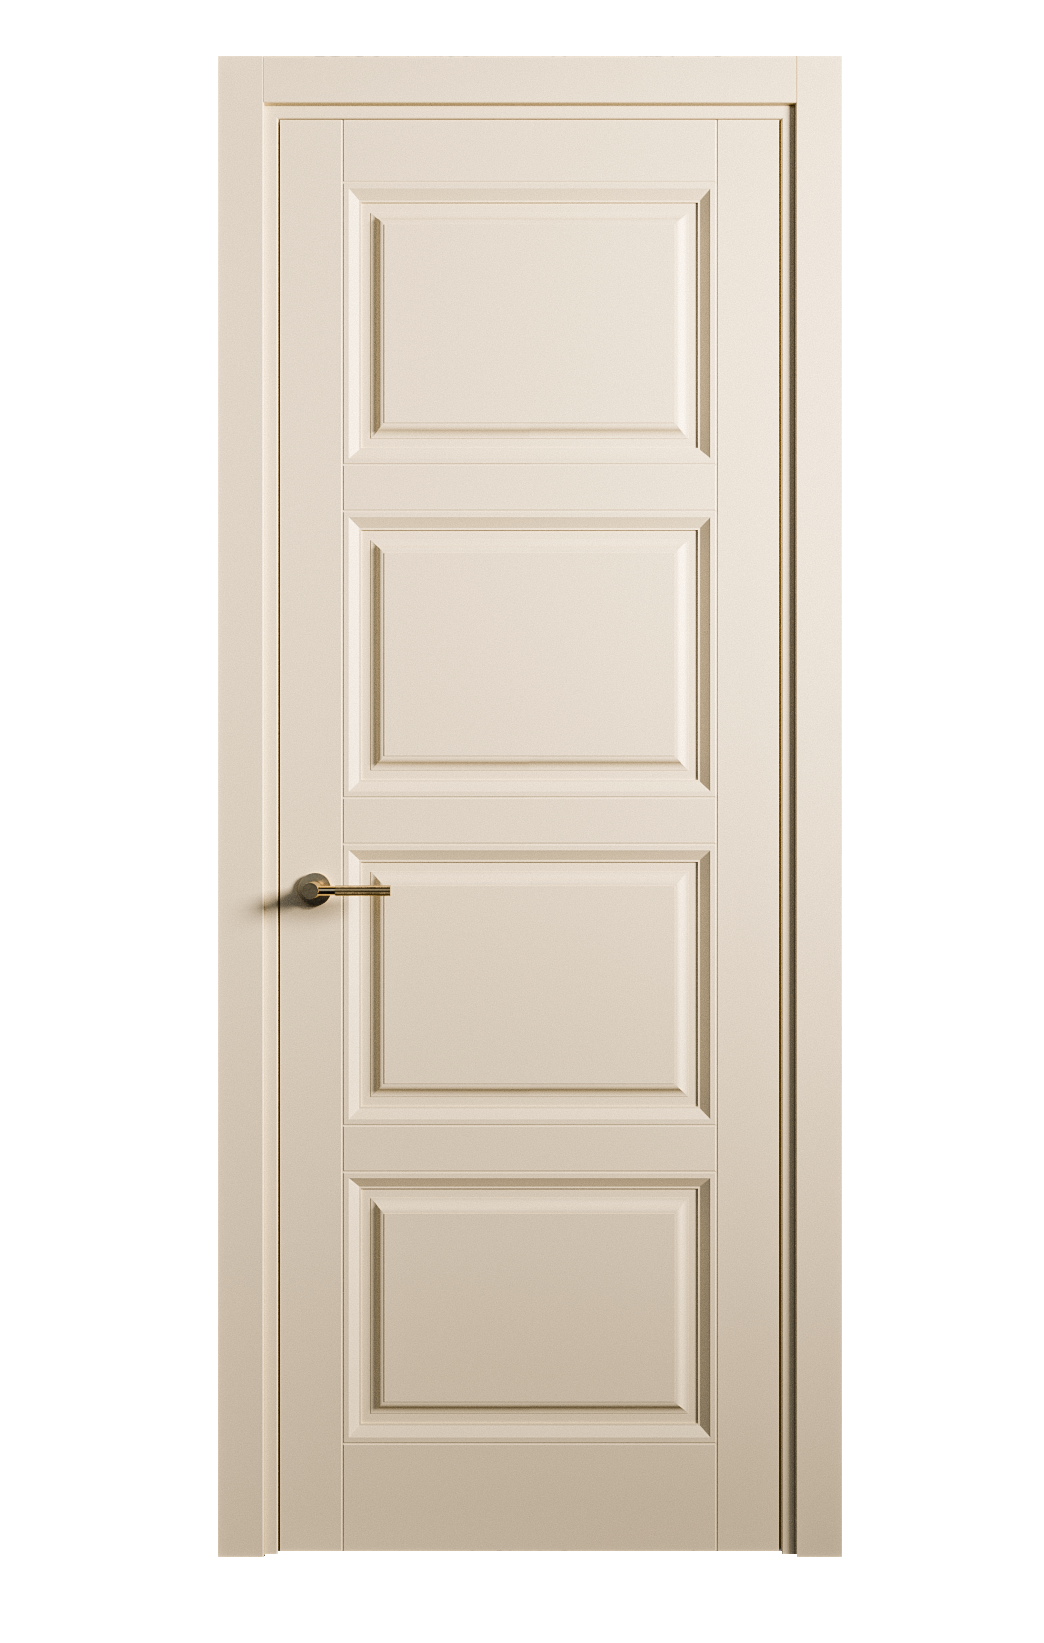 Межкомнатная дверь Venezia-4 глухая эмаль ral 1015 25842